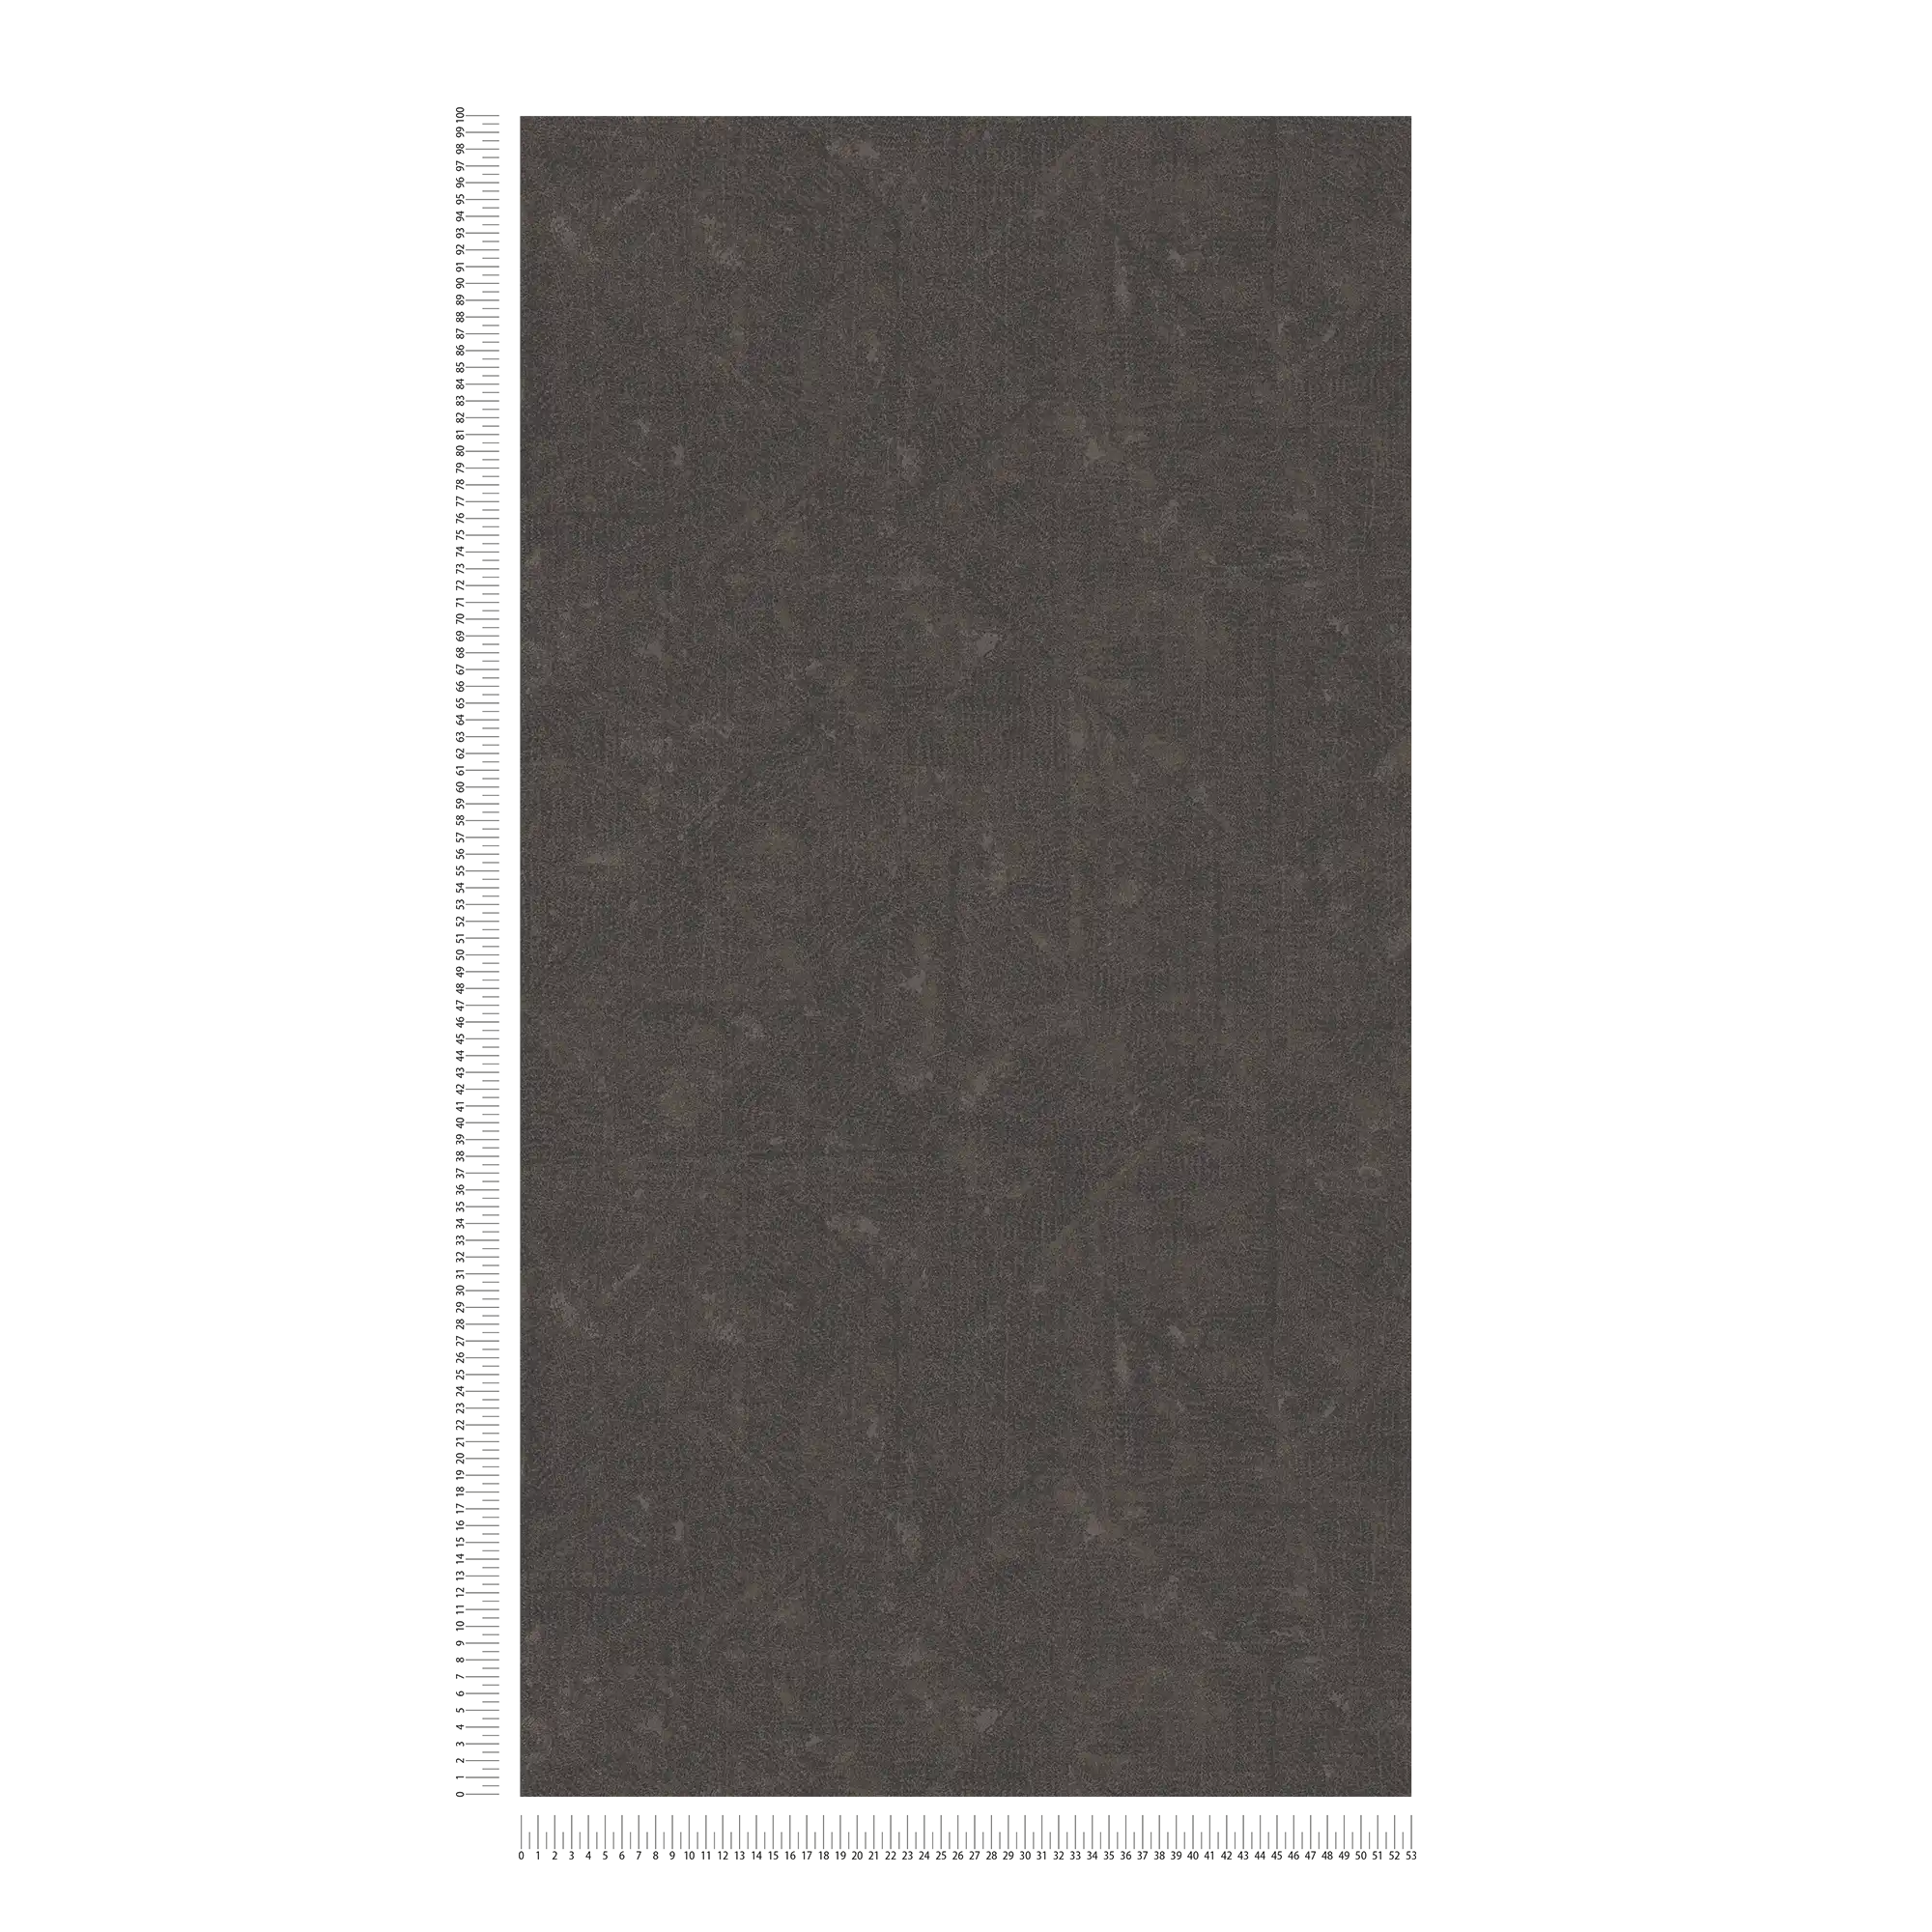             Dunkelbraune Vliestapete subtil gemustert – Braun, Schwarz, Bronze
        